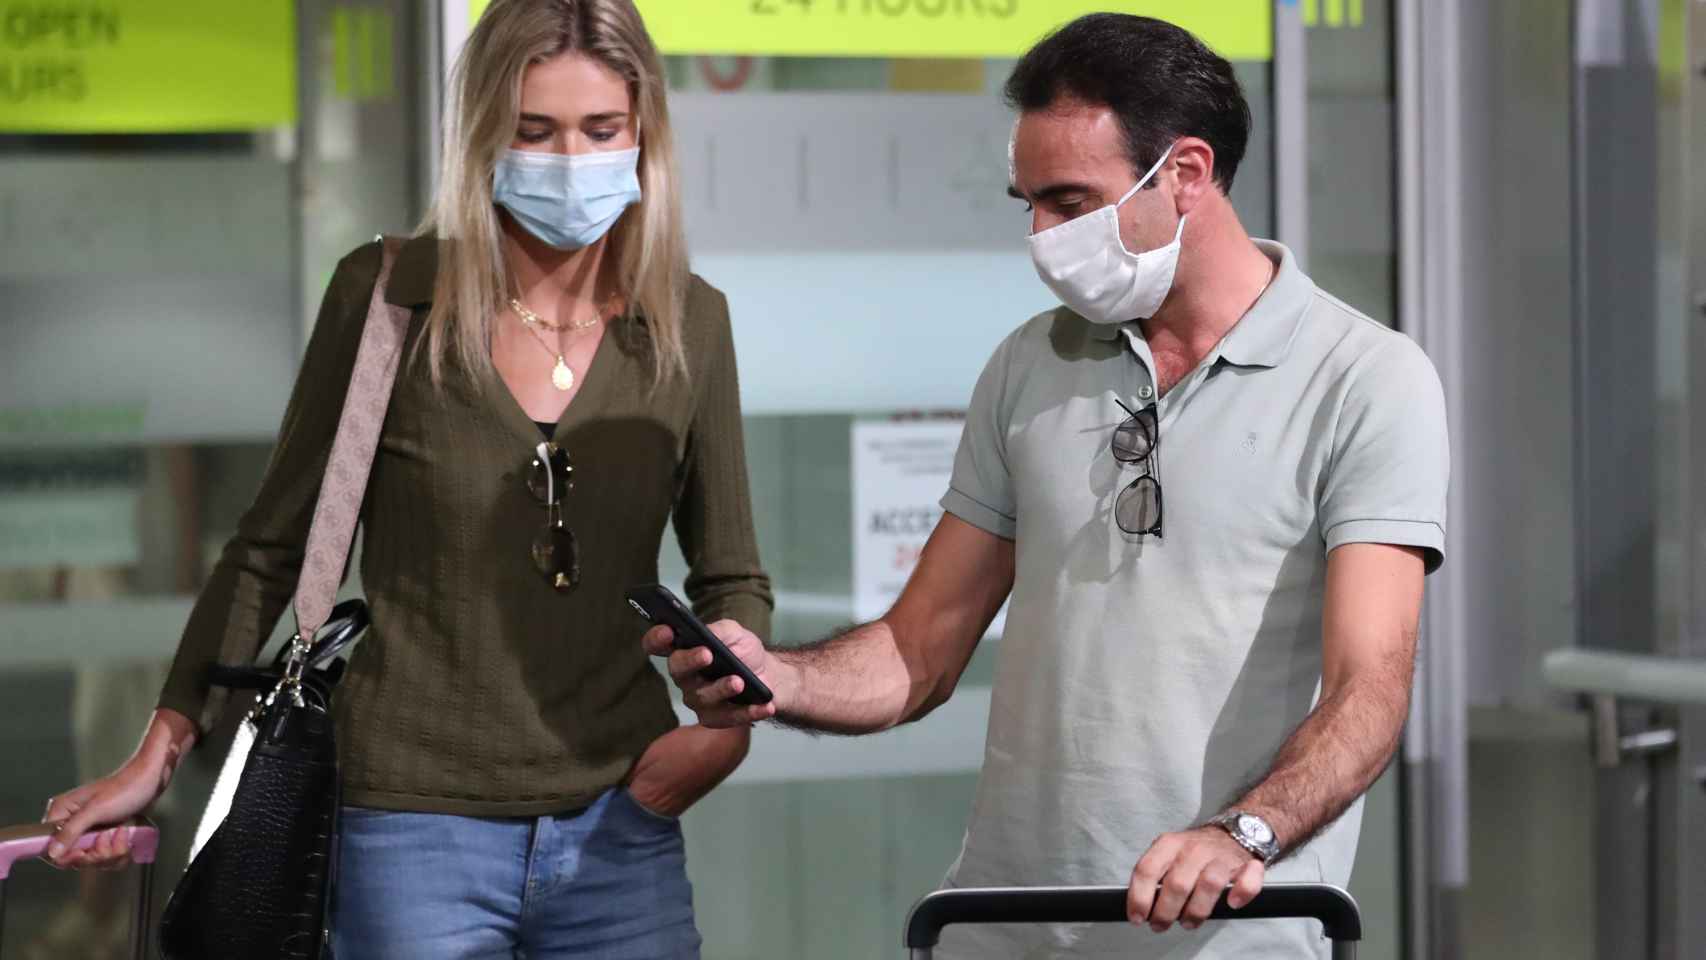 La pareja formada por Enrique Ponce y Ana Soria en una imagen tomada en el aeropuerto de Madrid.